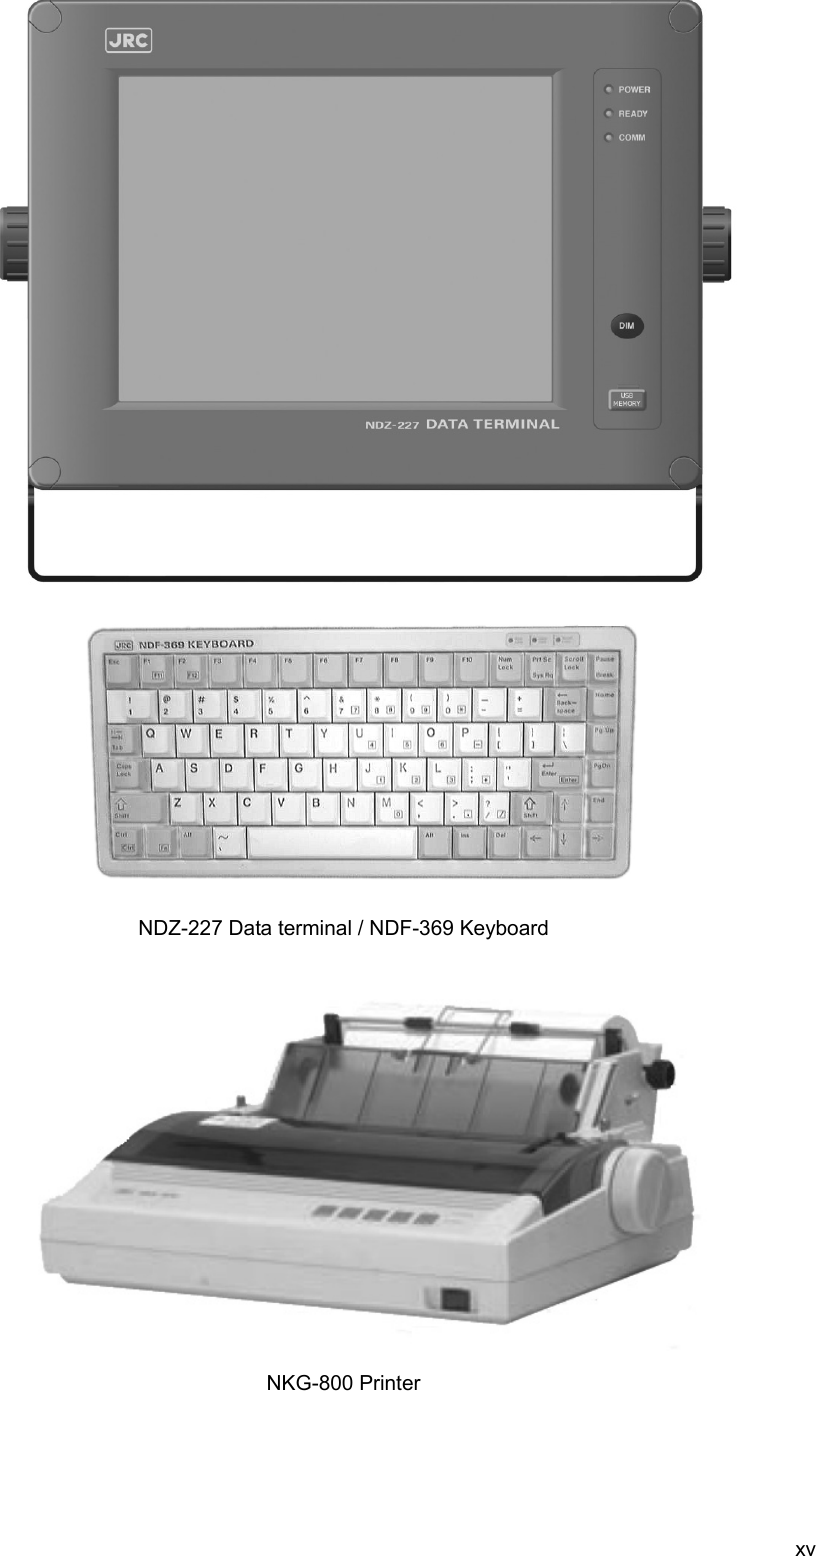  xv                                       NDZ-227 Data terminal / NDF-369 Keyboard                   NKG-800 Printer   